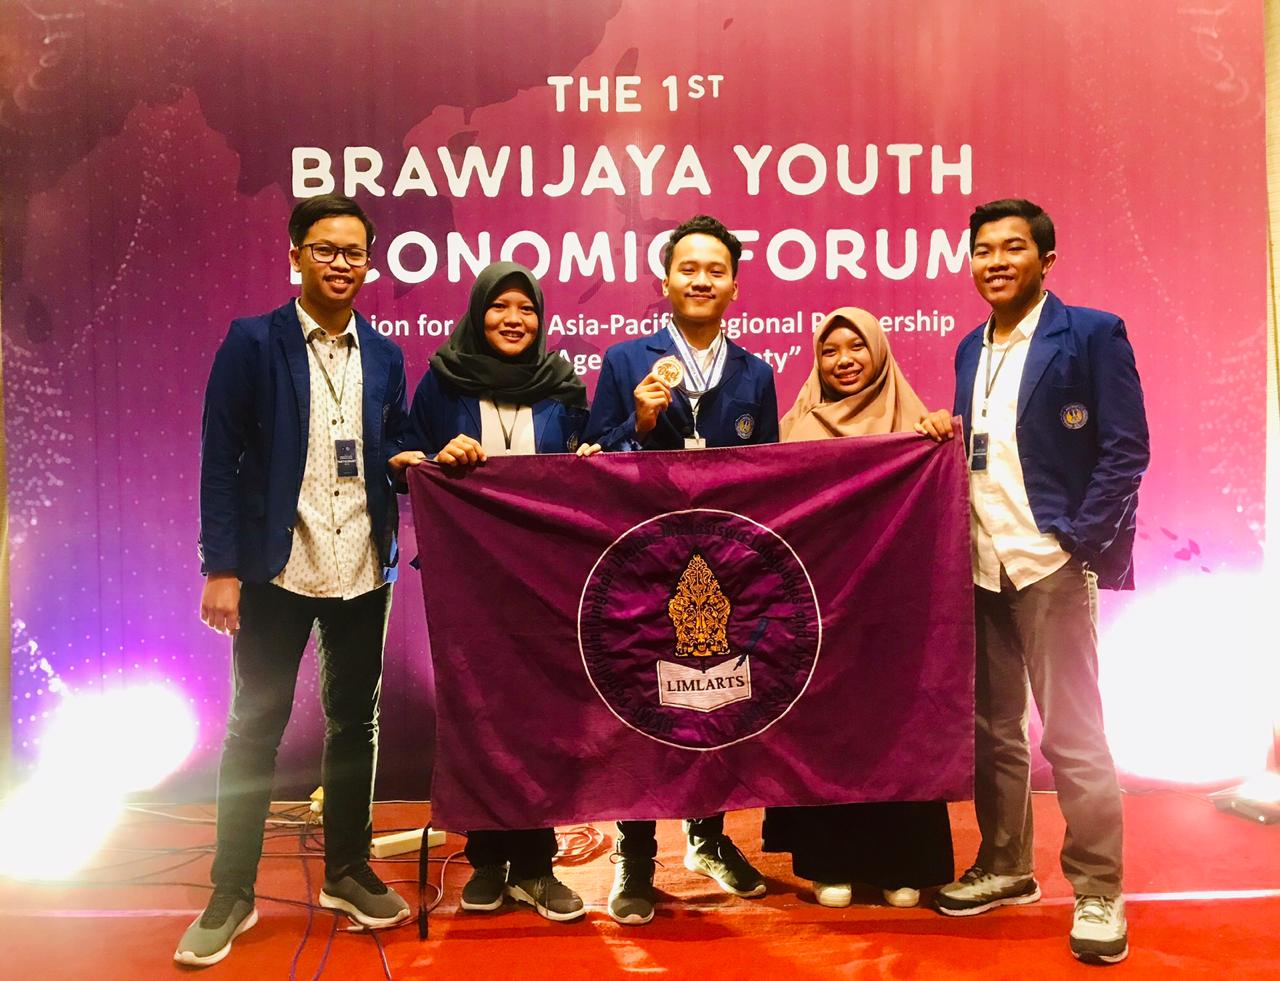 Foto 1st Brawijaya Youth Economic Forum 2019